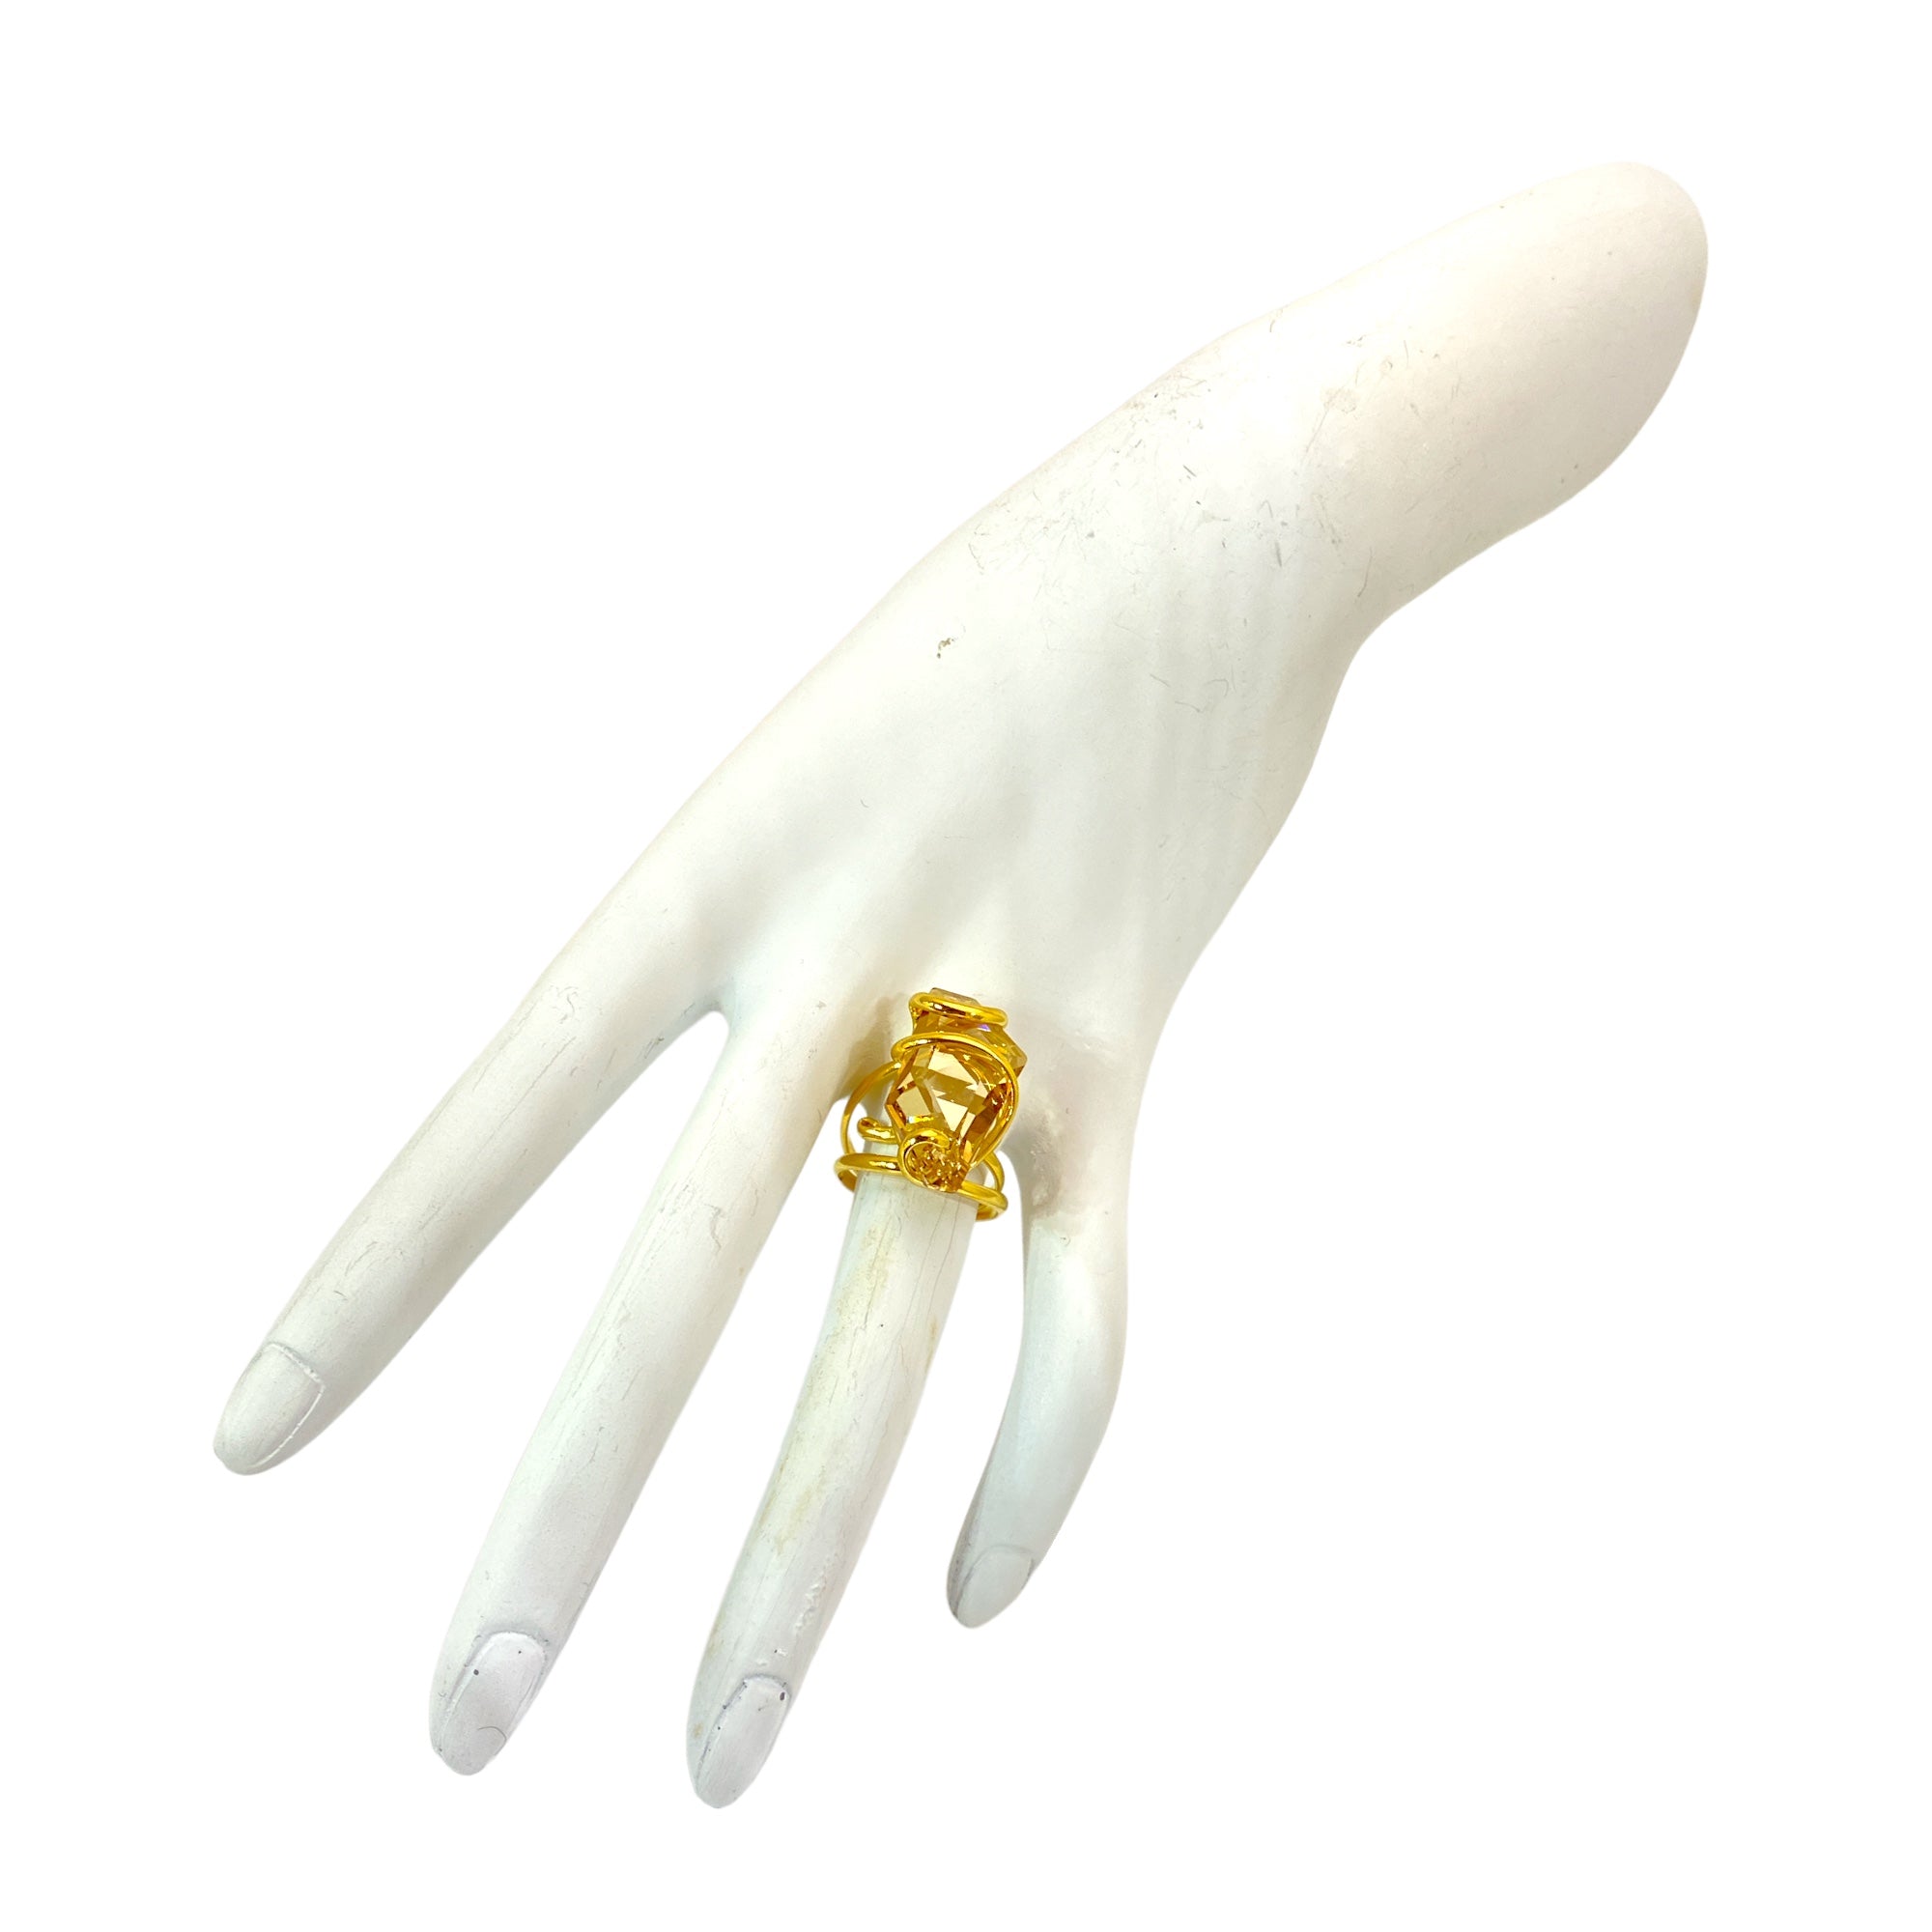 Un prezioso cristallo ispira il design unico di questo straordinario anello realizzato in metallo Placcato Oro.